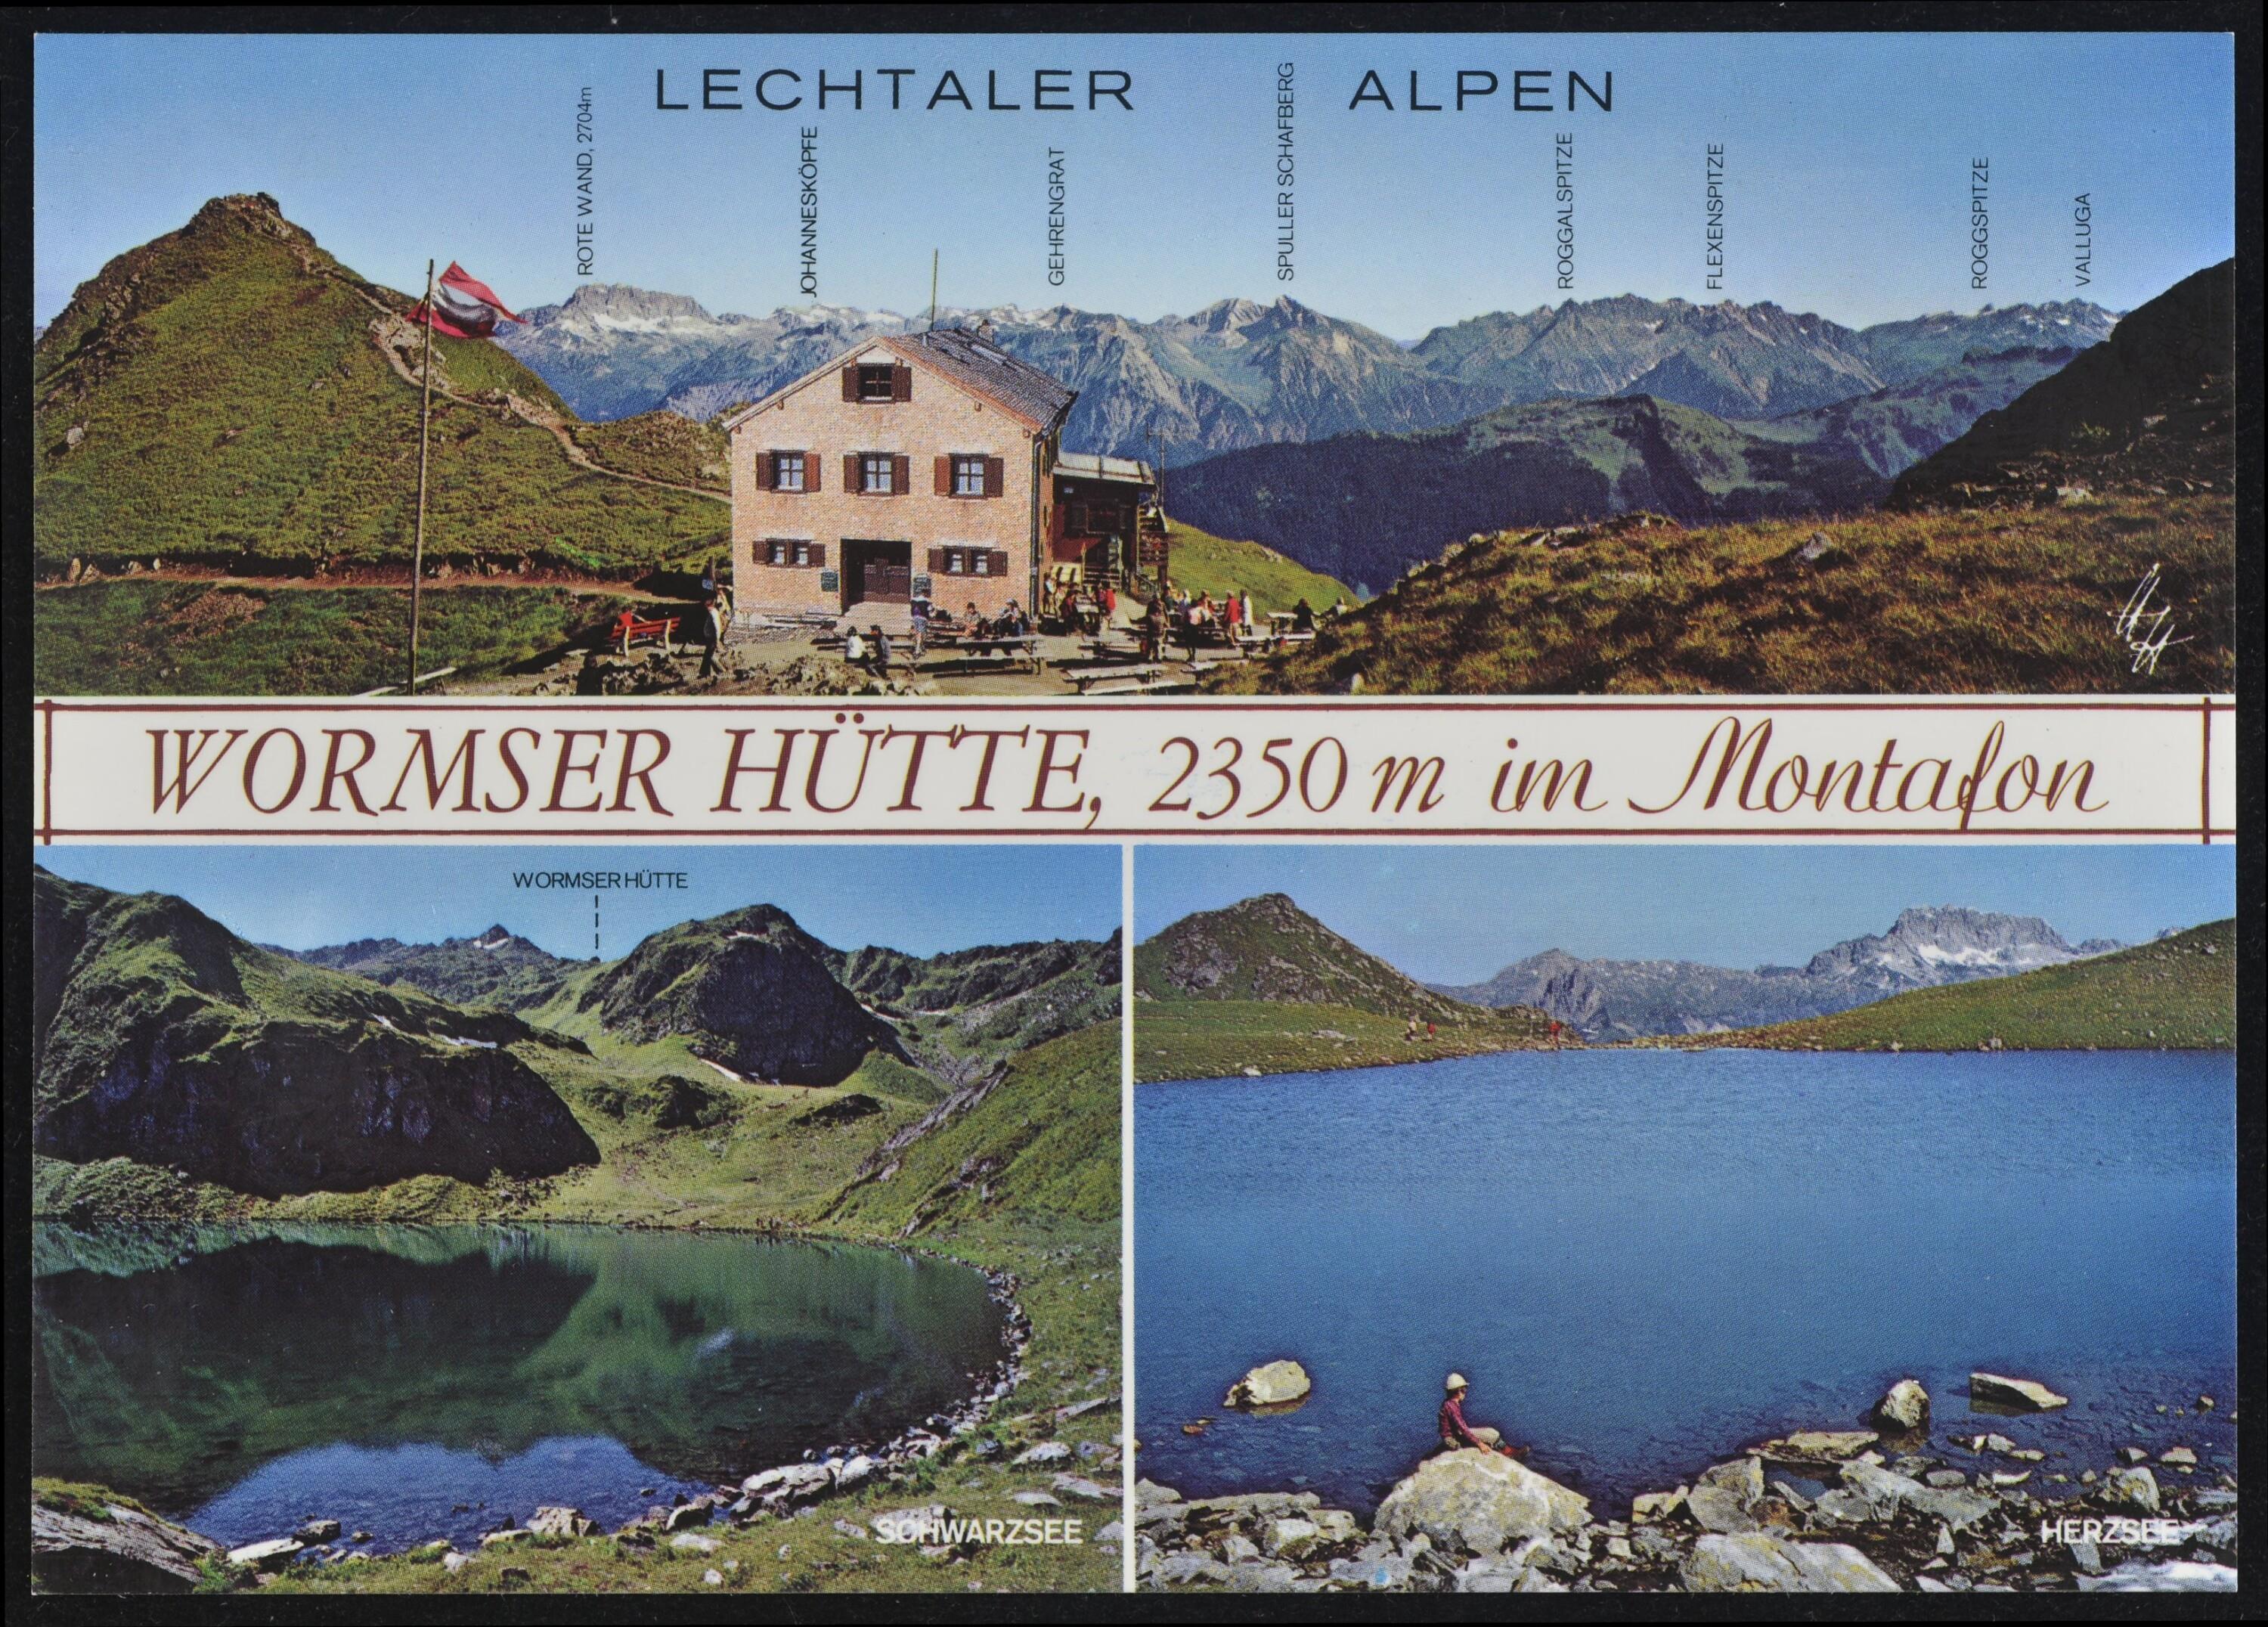 [Schruns] Wormser Hütte, 2350 m im Montafon></div>


    <hr>
    <div class=